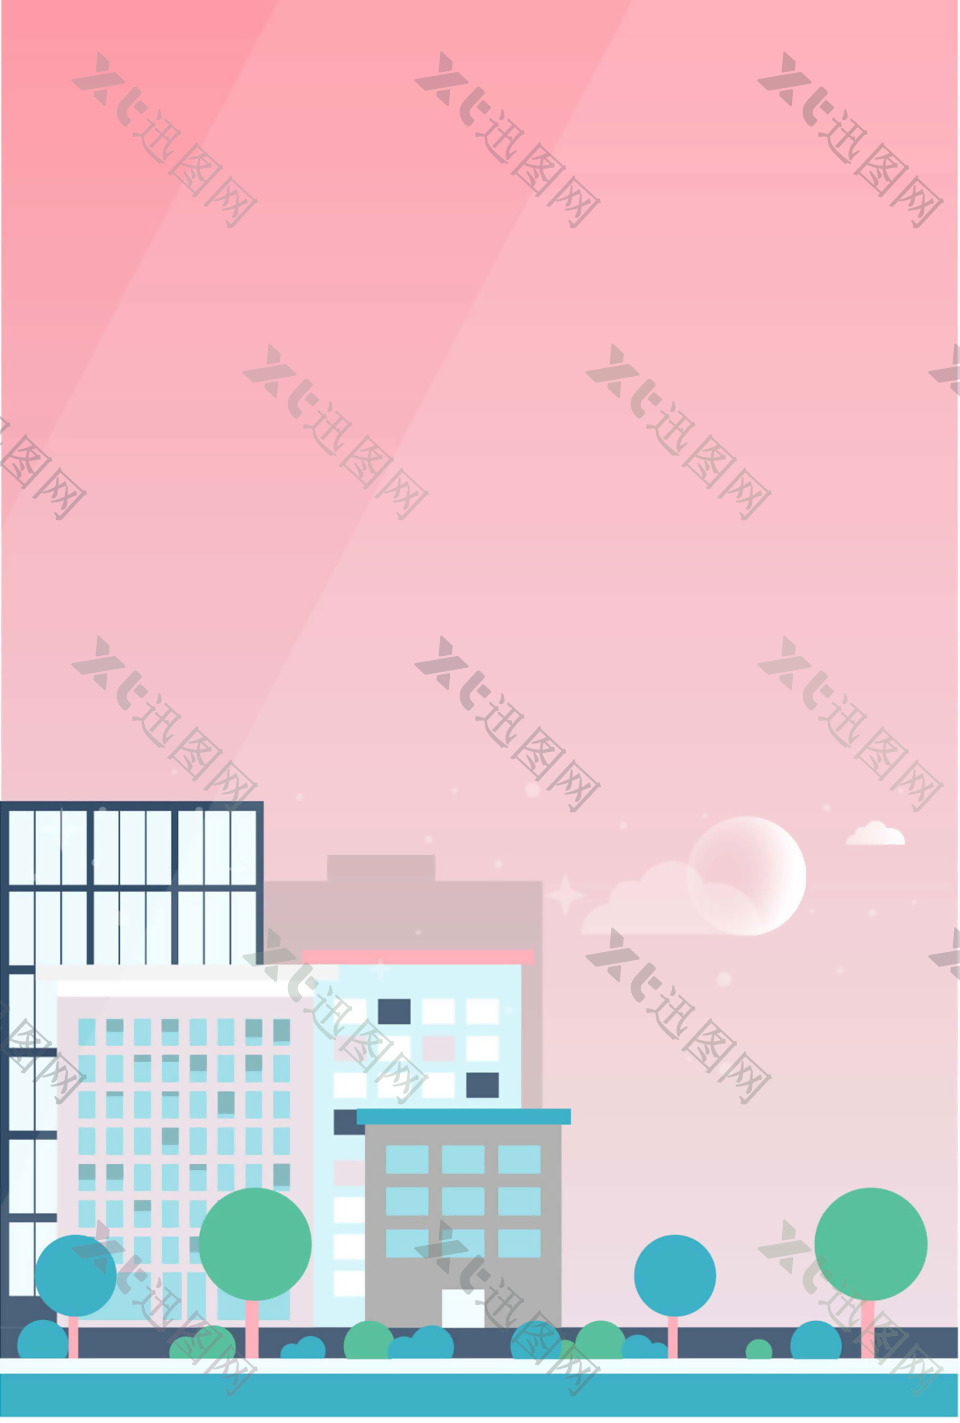 城市高楼粉色背景